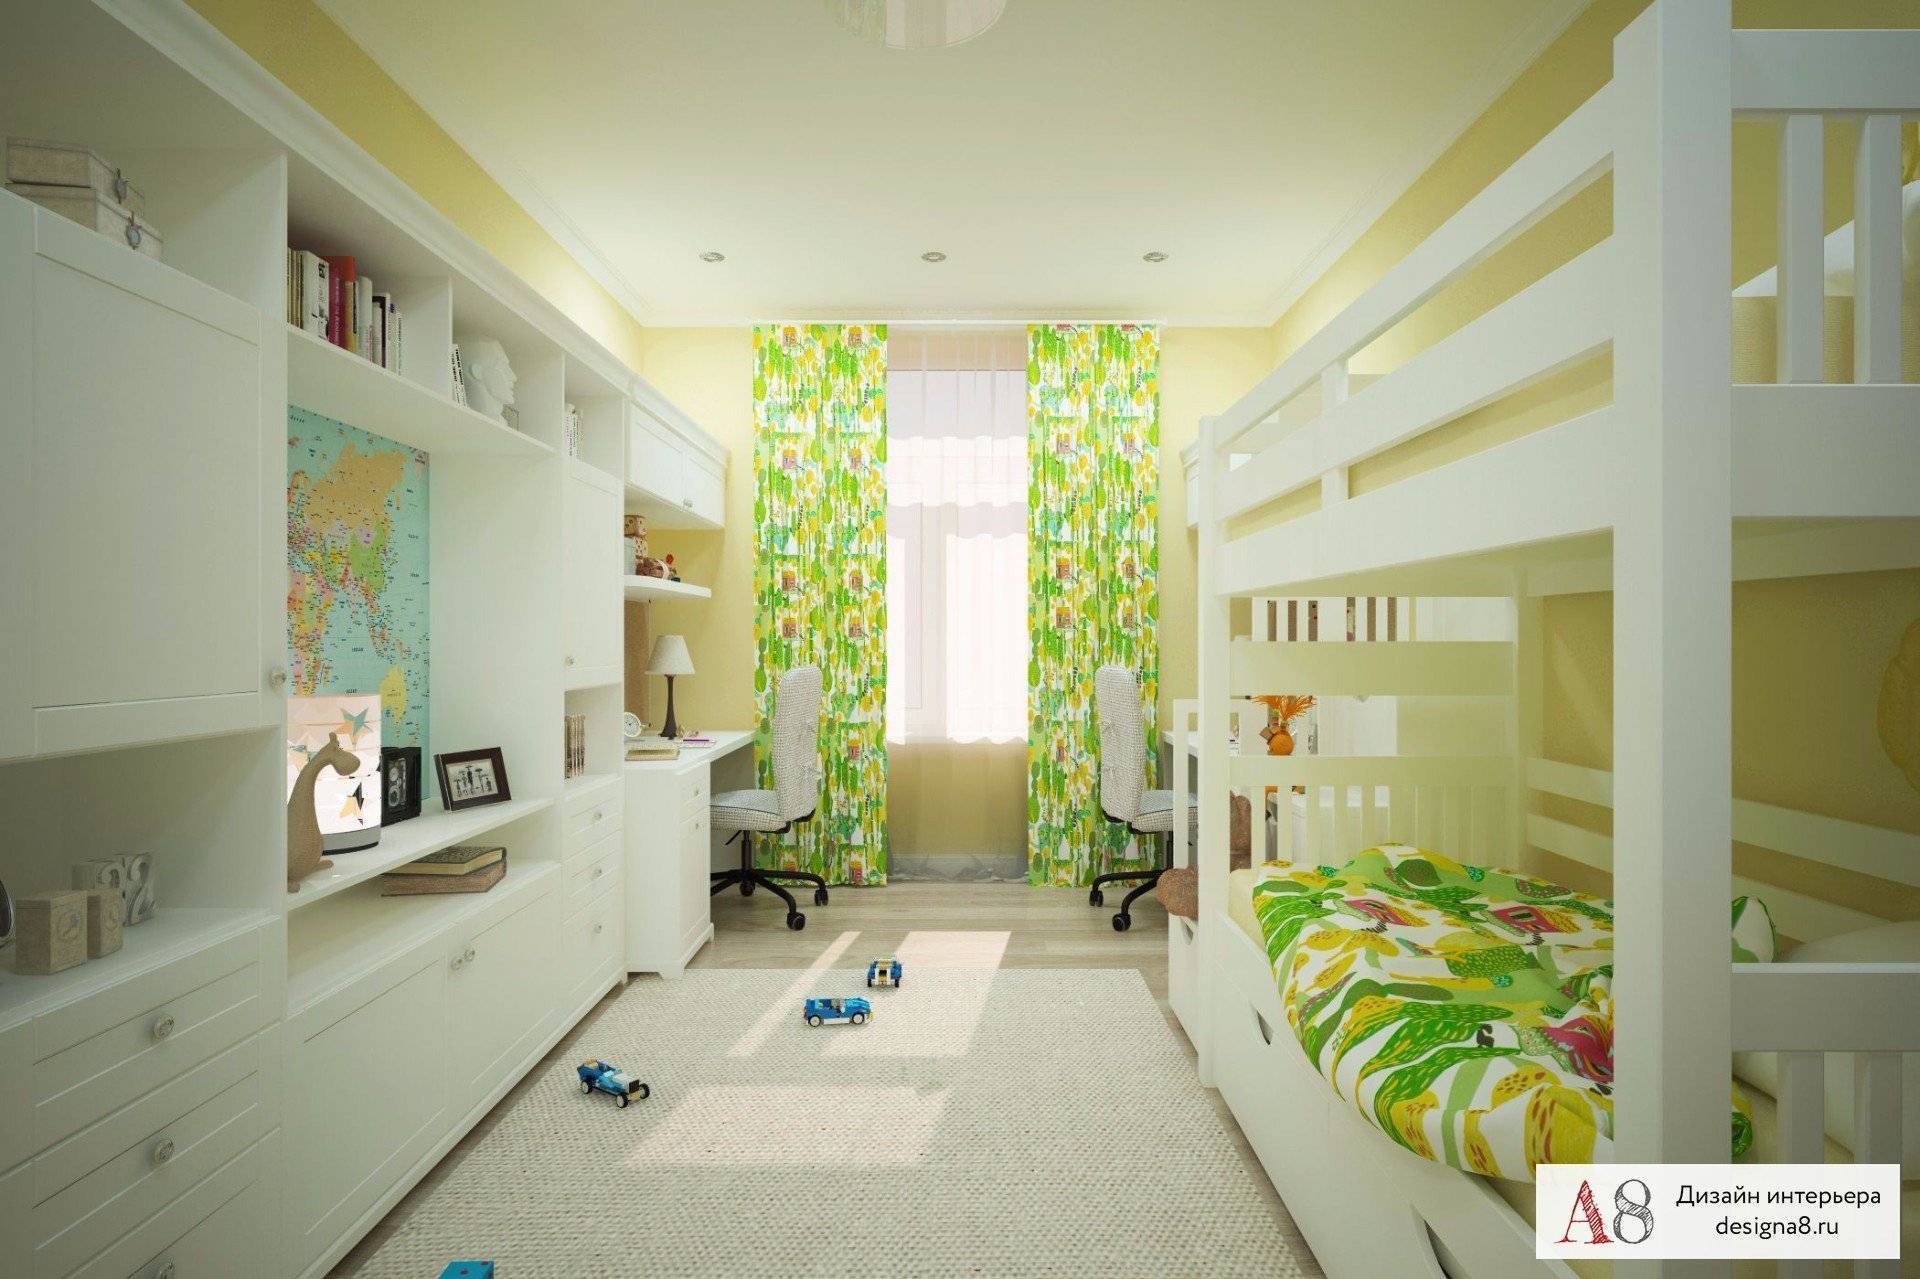 Дизайн детской для мальчика и девочки: требования к комнате, как правильно обустроить интерьер и подобрать мебель для двоих разнополых детей, декор, зонирование